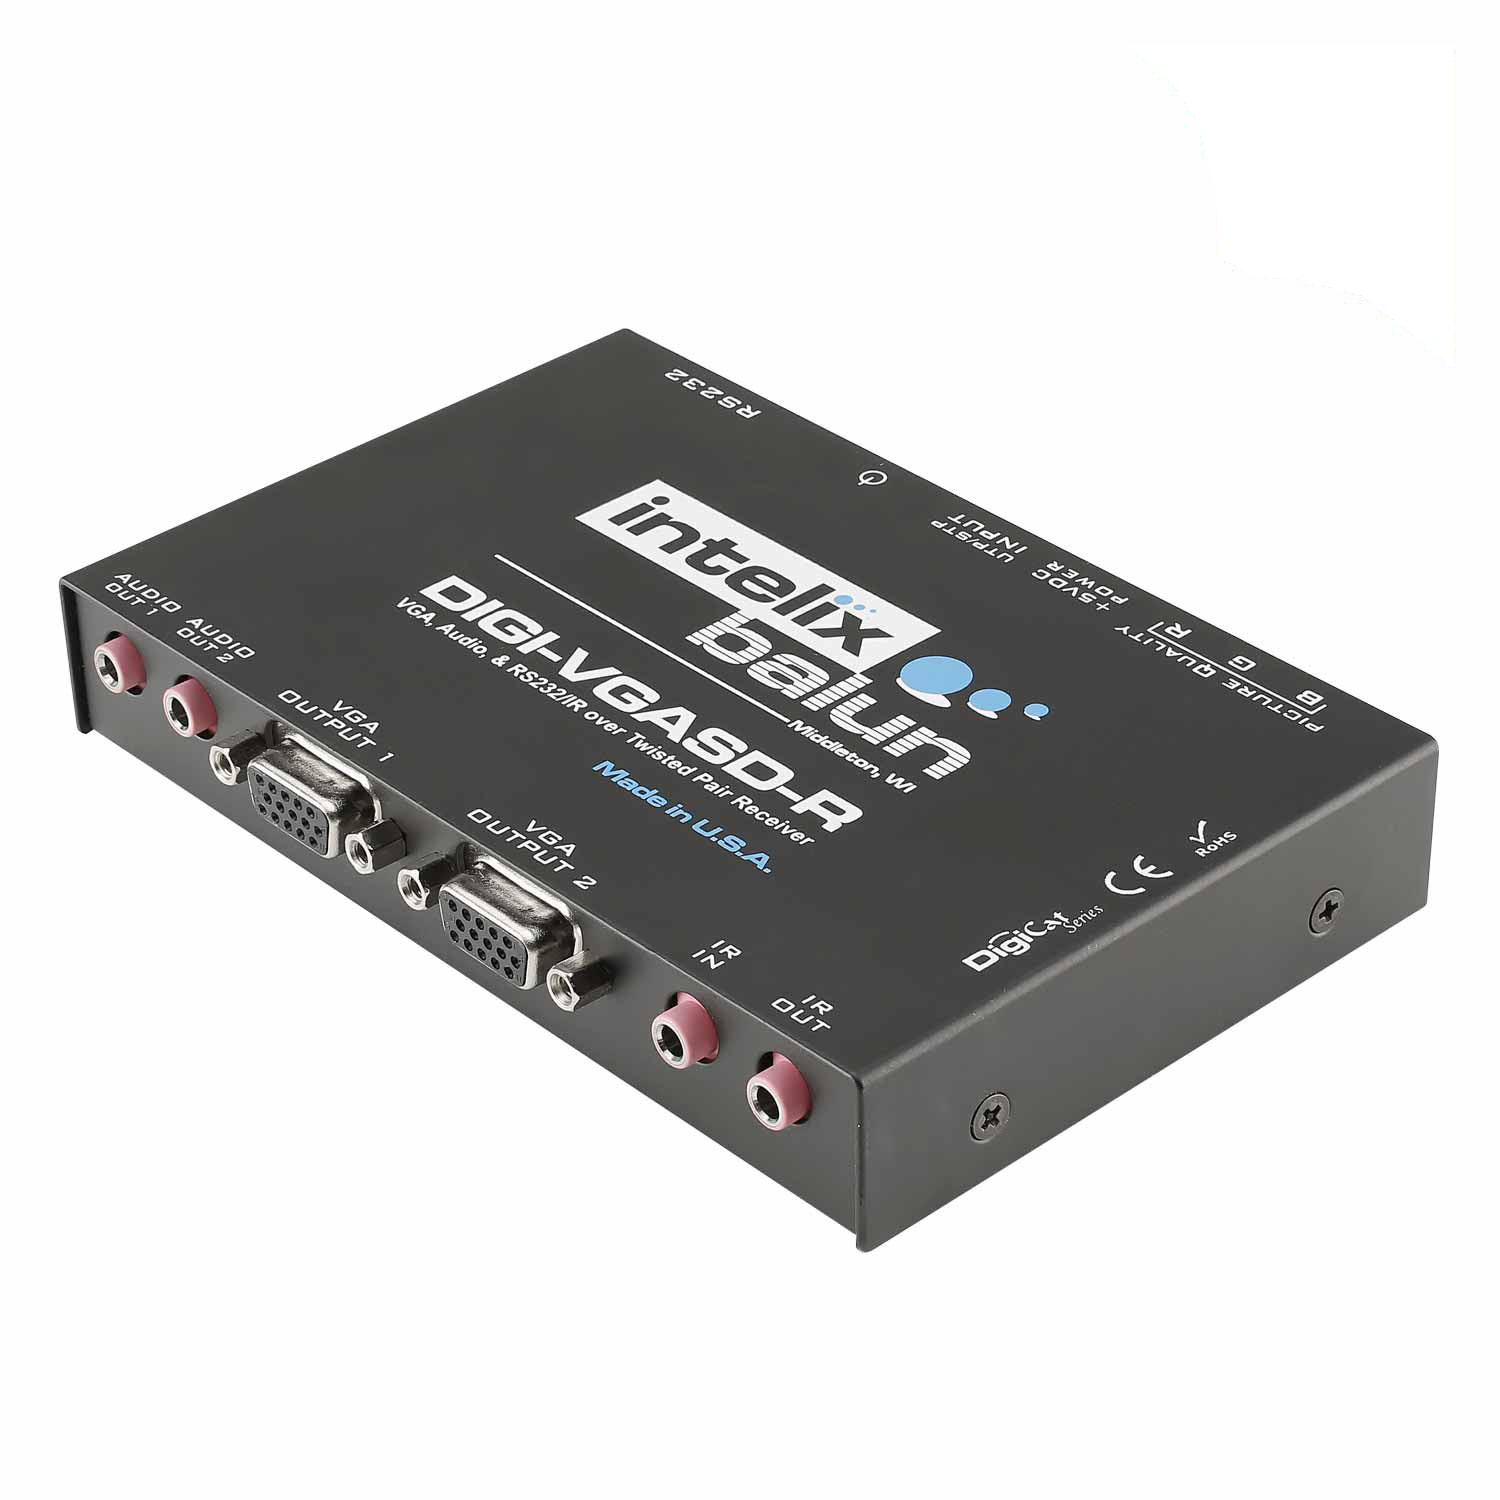 INTELIX IX-DIGI-VGASD-R-EU, INTELIX VGA, stereo audio, IR and RS232 single receiver